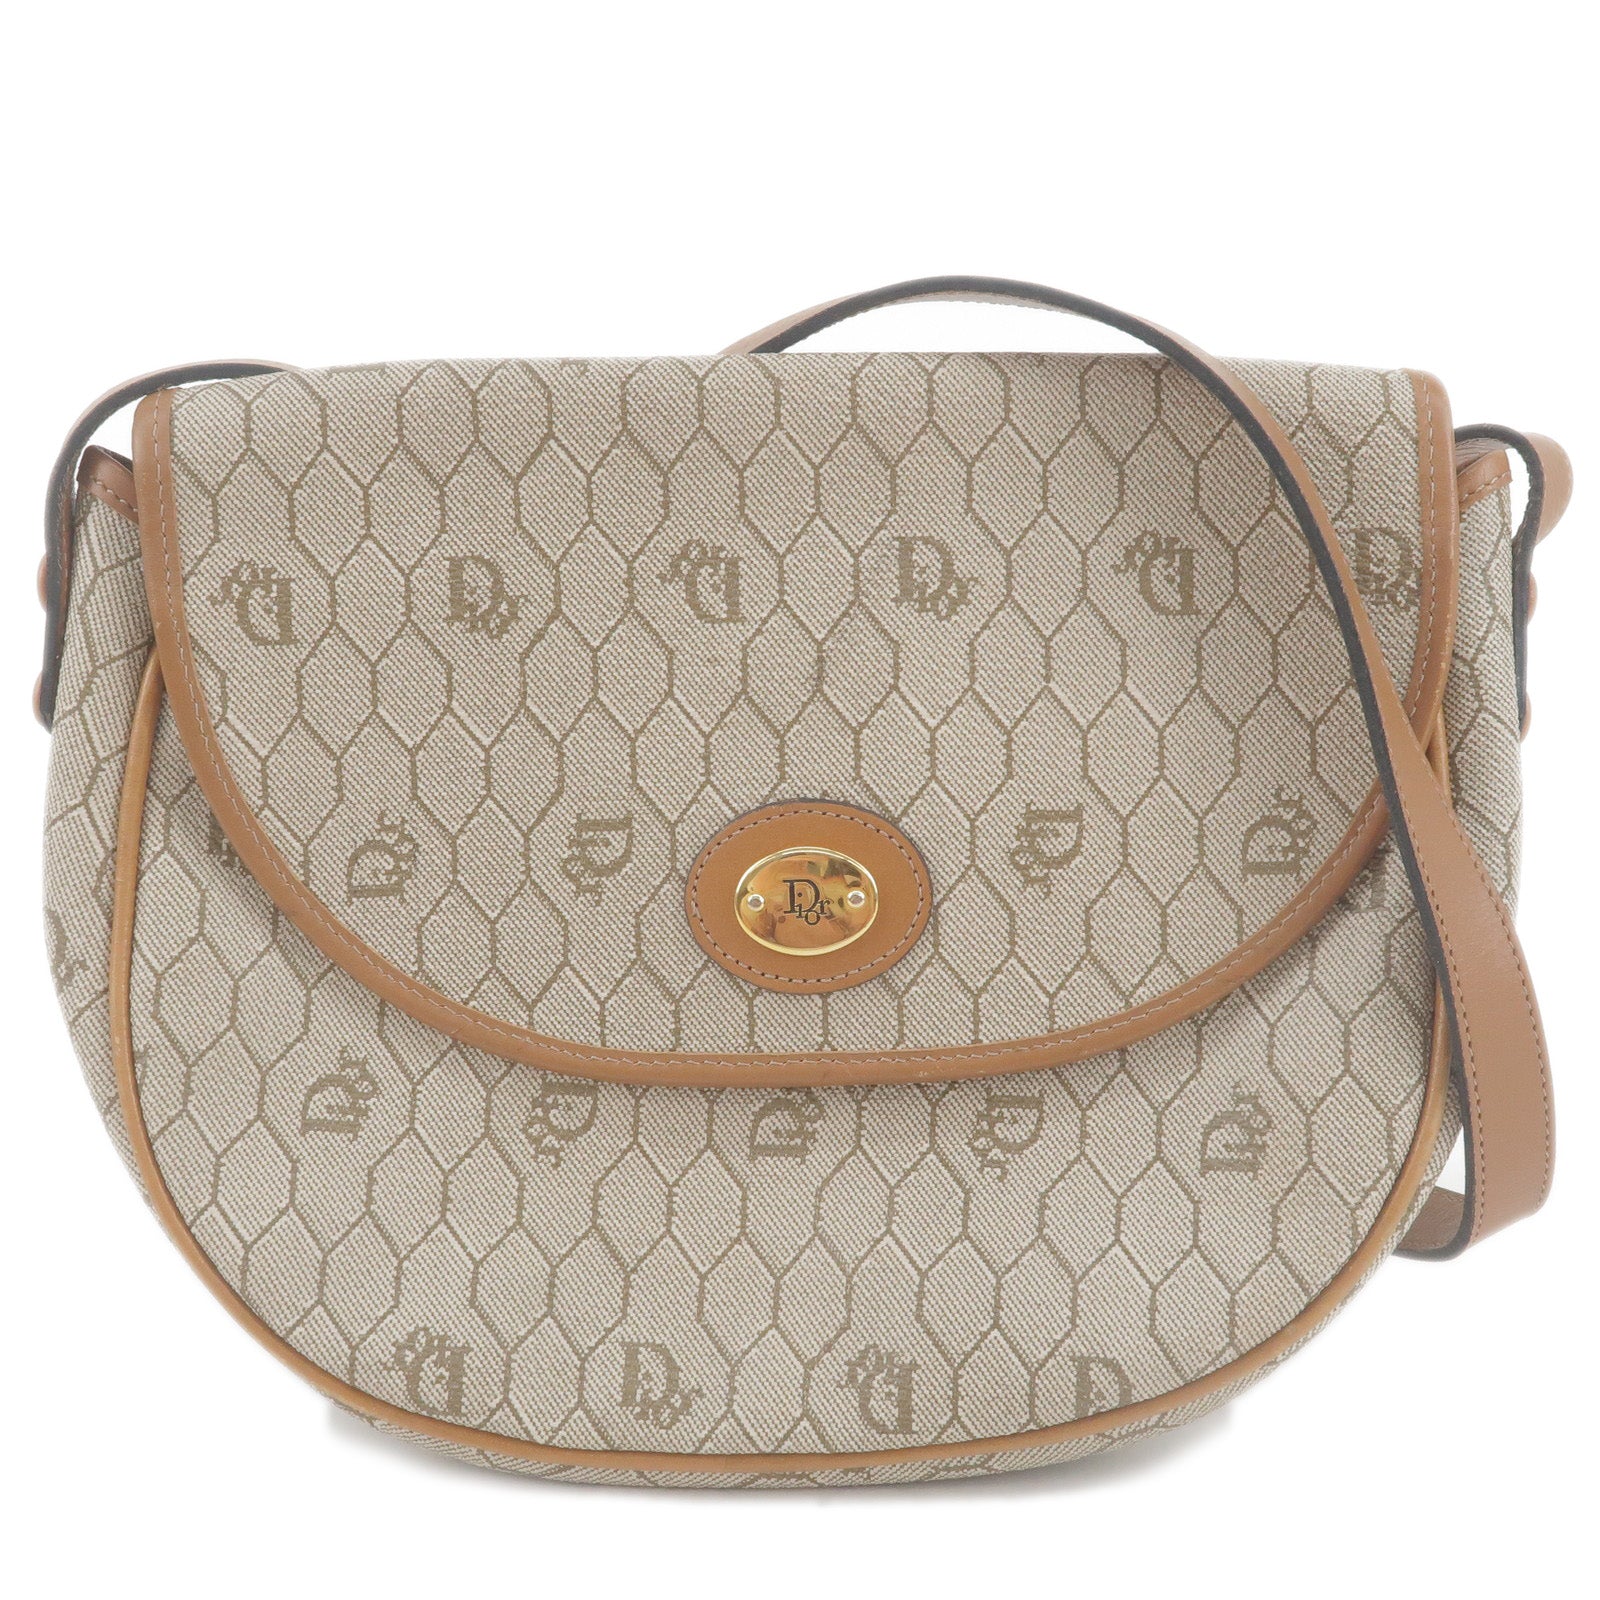 Christian-Dior-Honeycomb-PVC-Leather-Shoulder-Bag-Beige-Brown